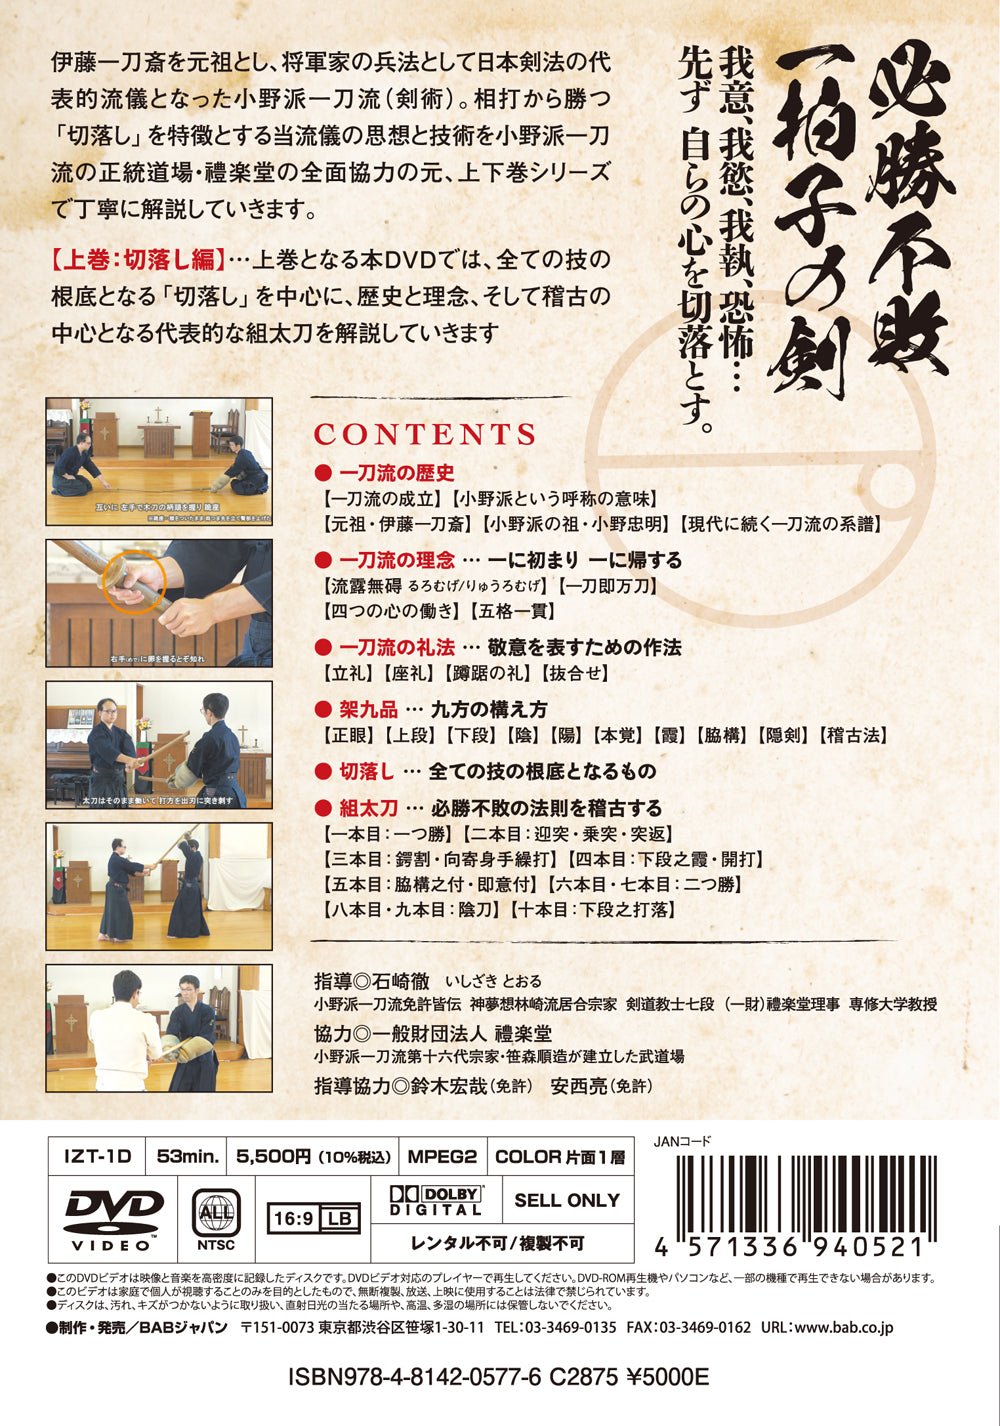 小野派一刀流剣術 Vol 1 DVD by 石崎透